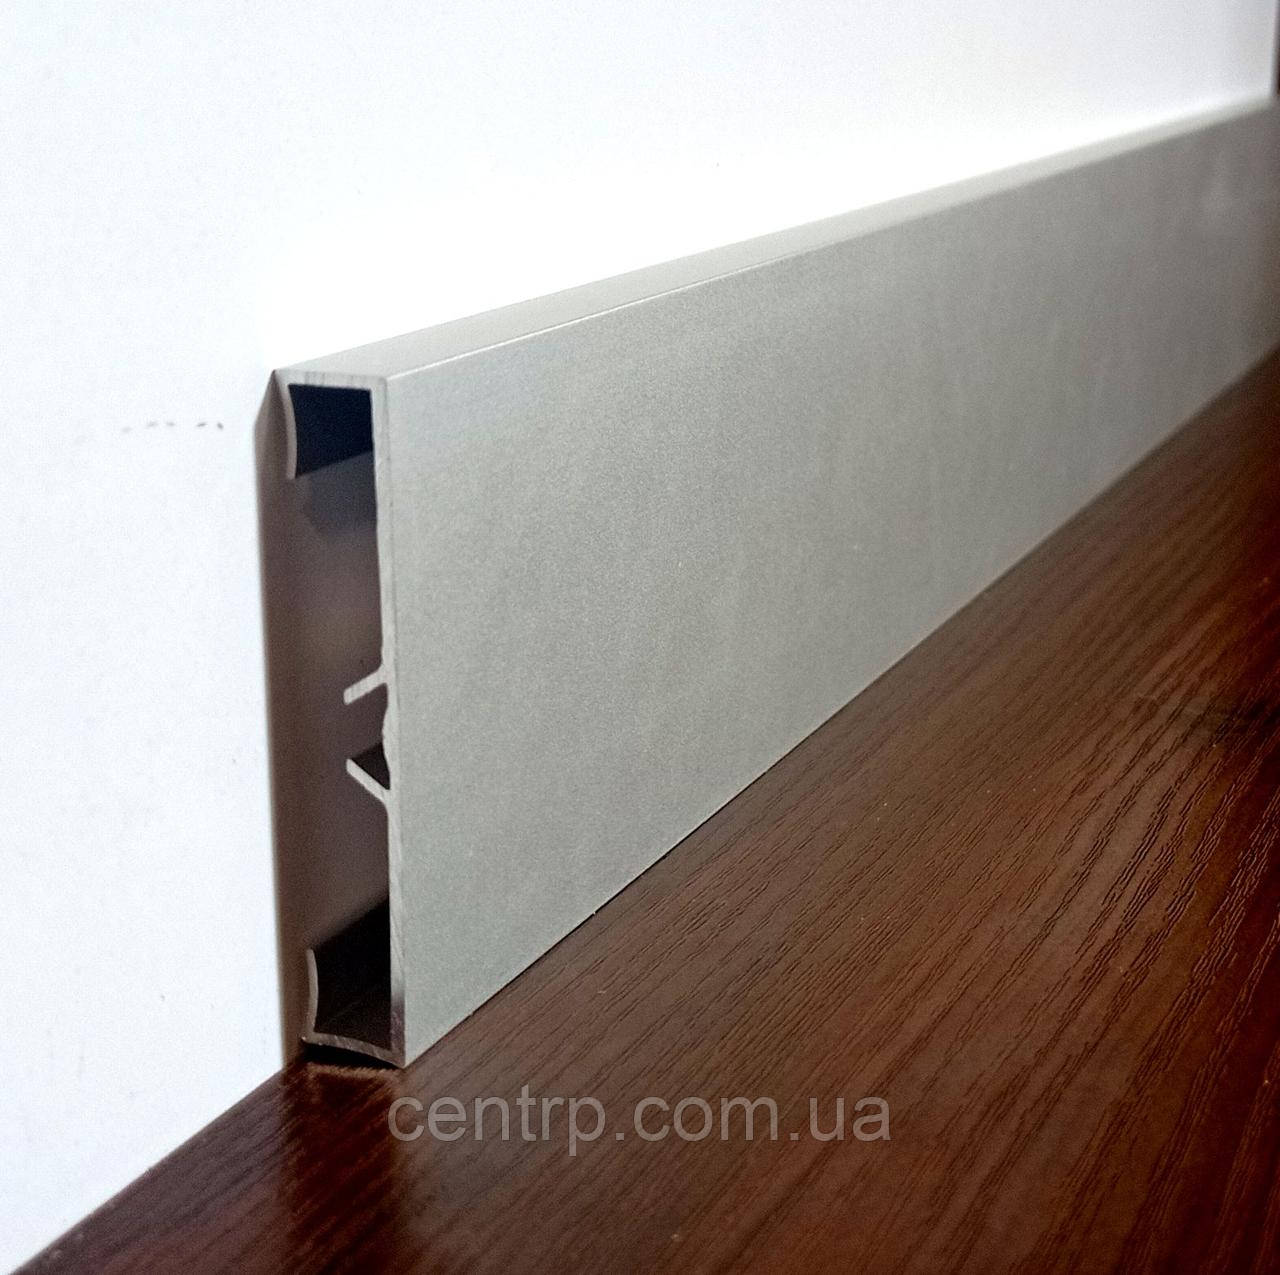 Дизайнерський алюмінієвий плінтус BEST DEAL 1/60 накладний, висота 60 мм, L-2,5 м срібло анод